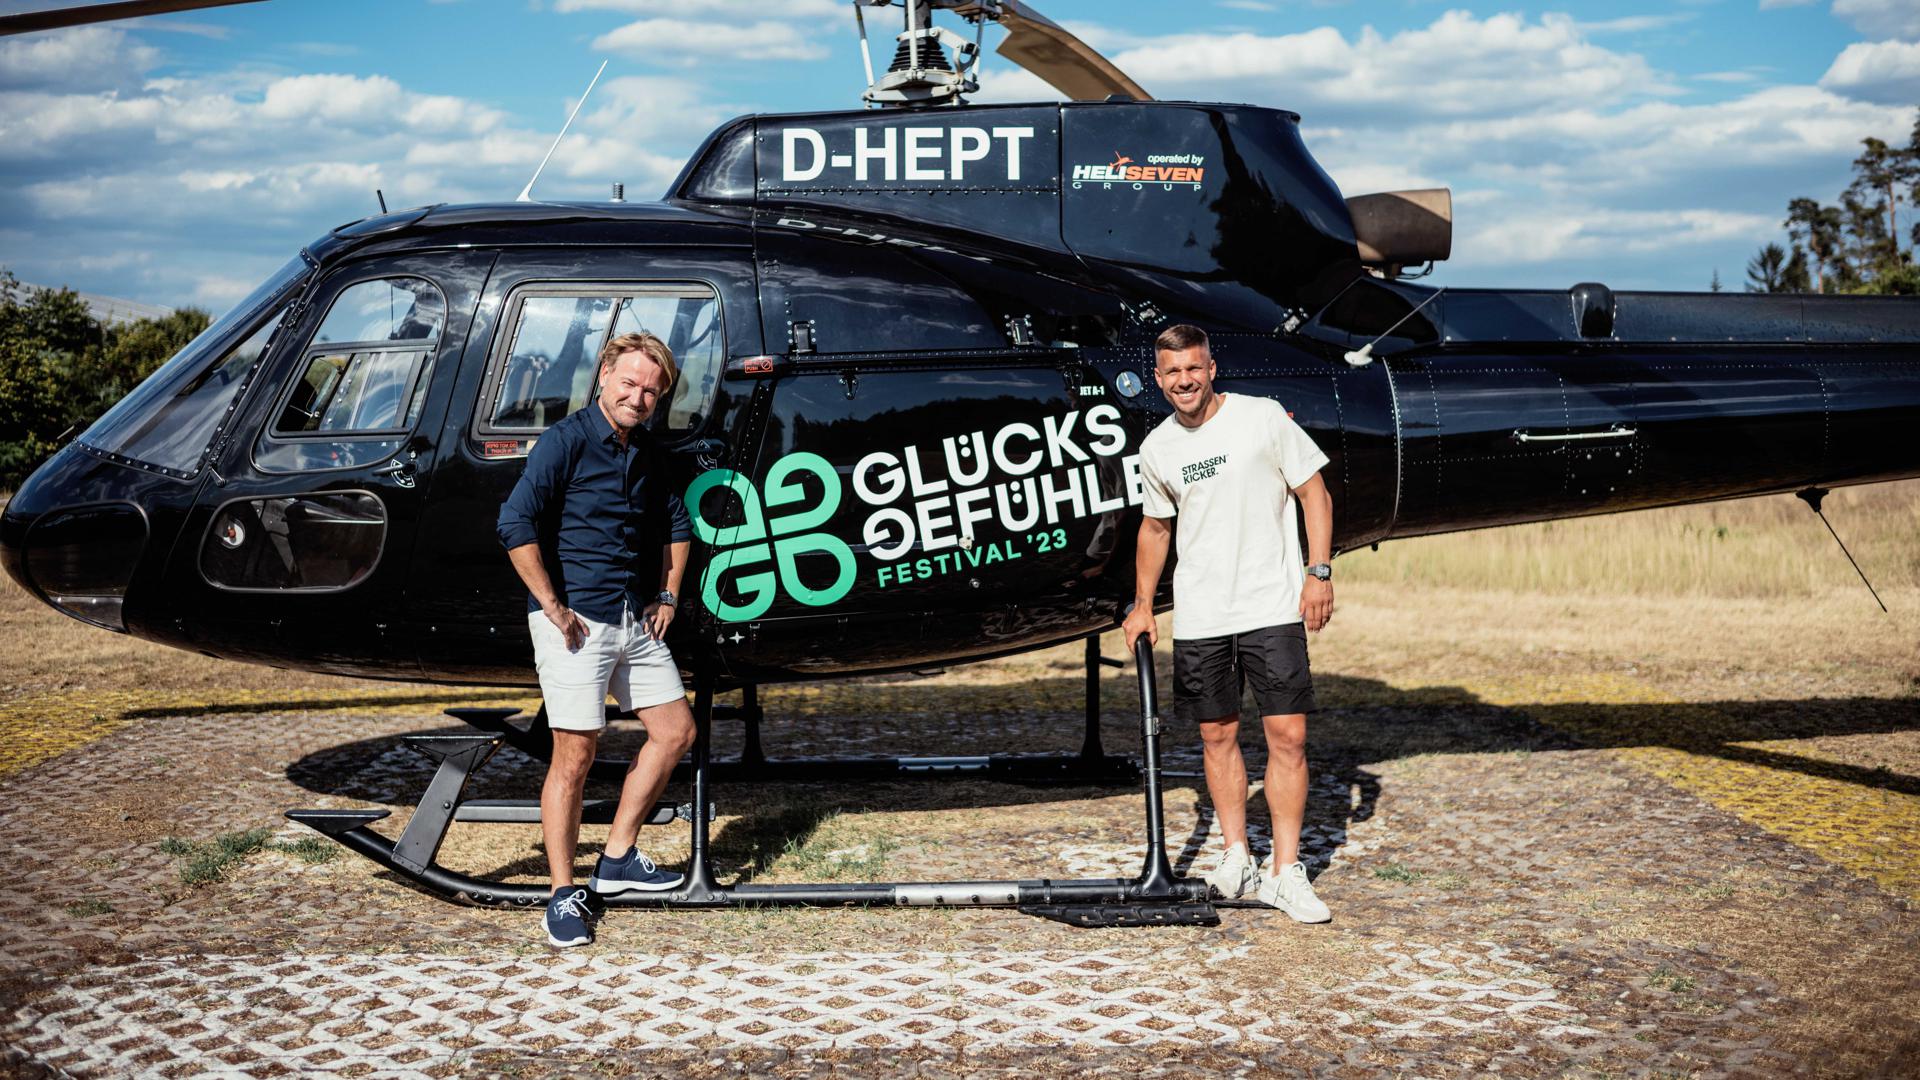 Lukas Podolski und Markus Krampe stehen vor einem Hubschrauber.